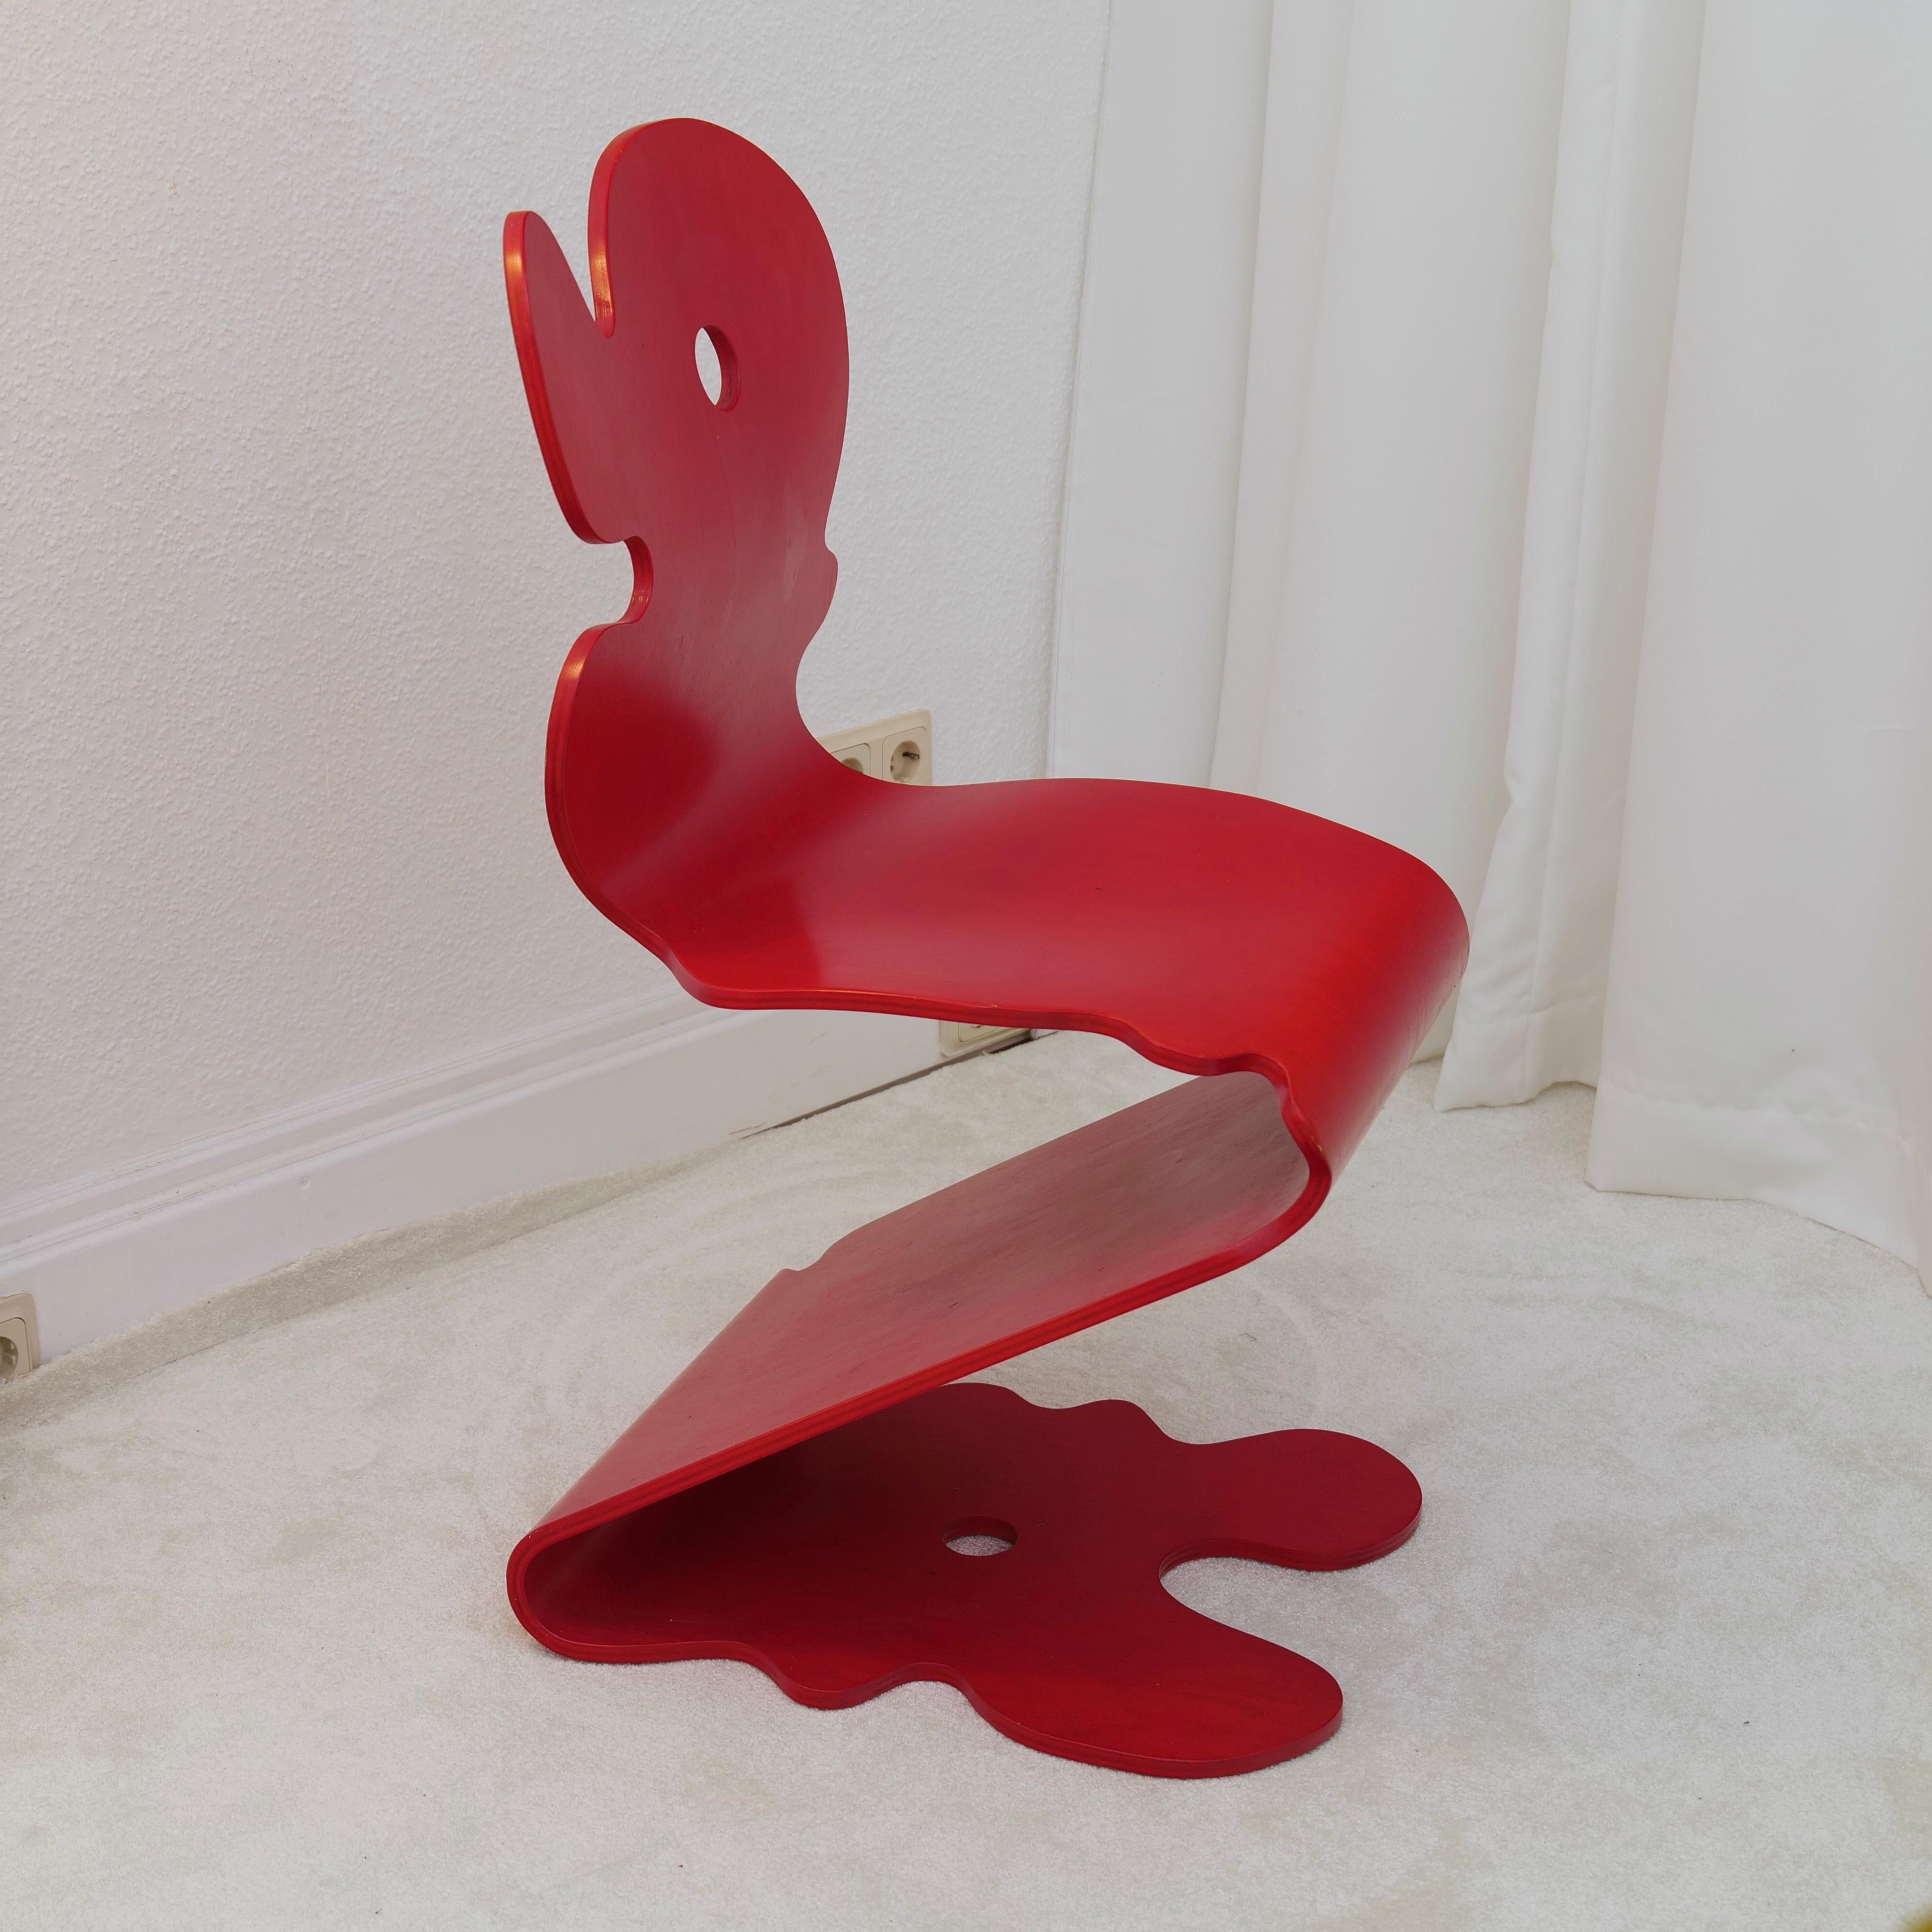 rare chaise 5020 Pantonic rouge en très bon état avec de légères traces d'utilisation

Couleur rouge vif - parfaite pièce de collection et empilable avec d'autres chaises.